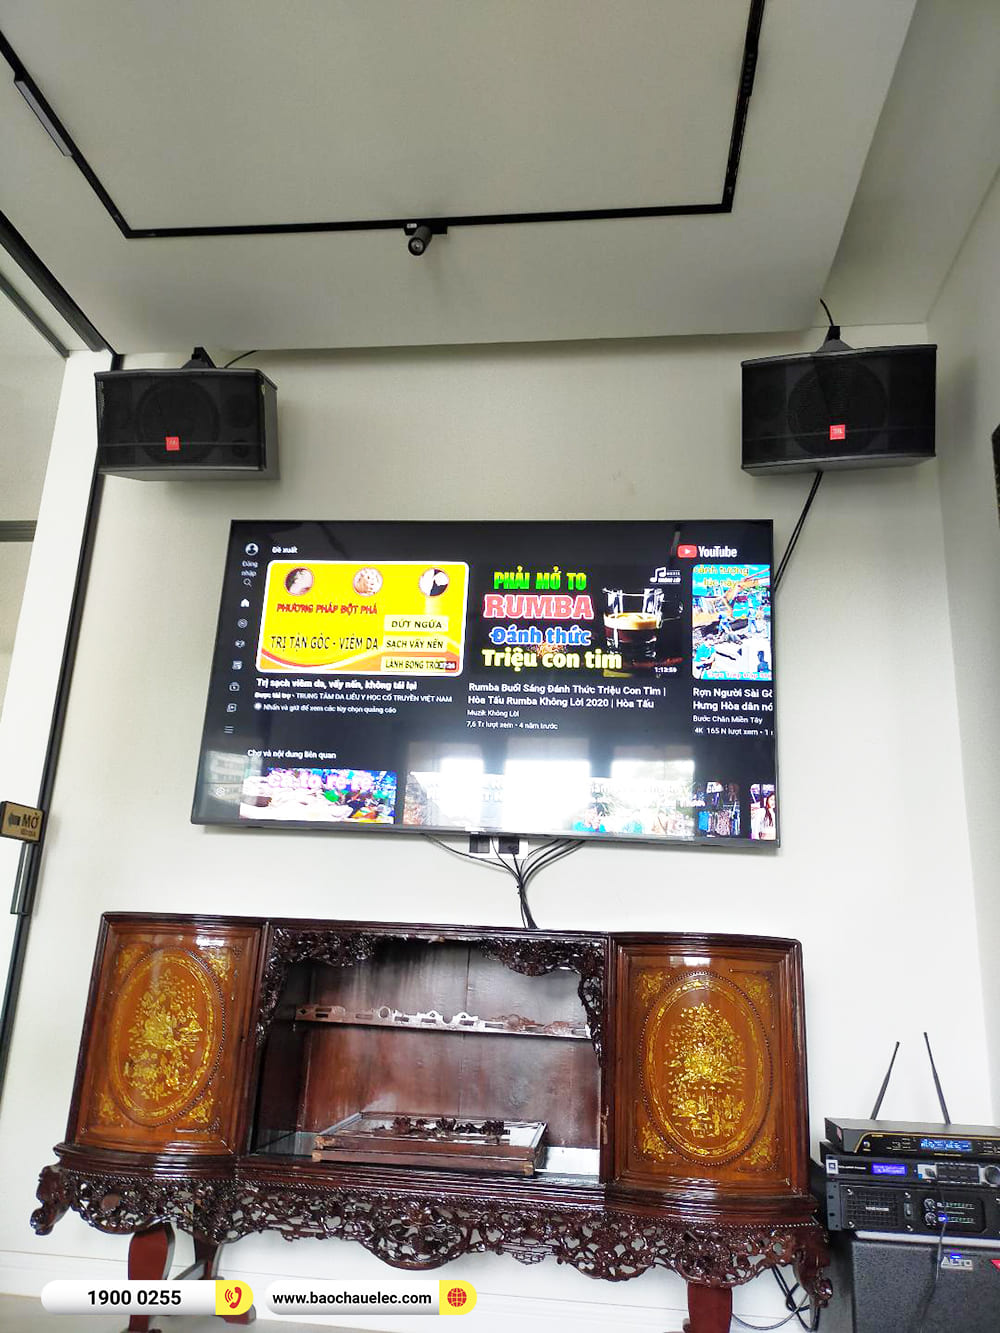 Lắp đặt dàn karaoke JBL gần 38tr cho chị Thảo ở TPHCM